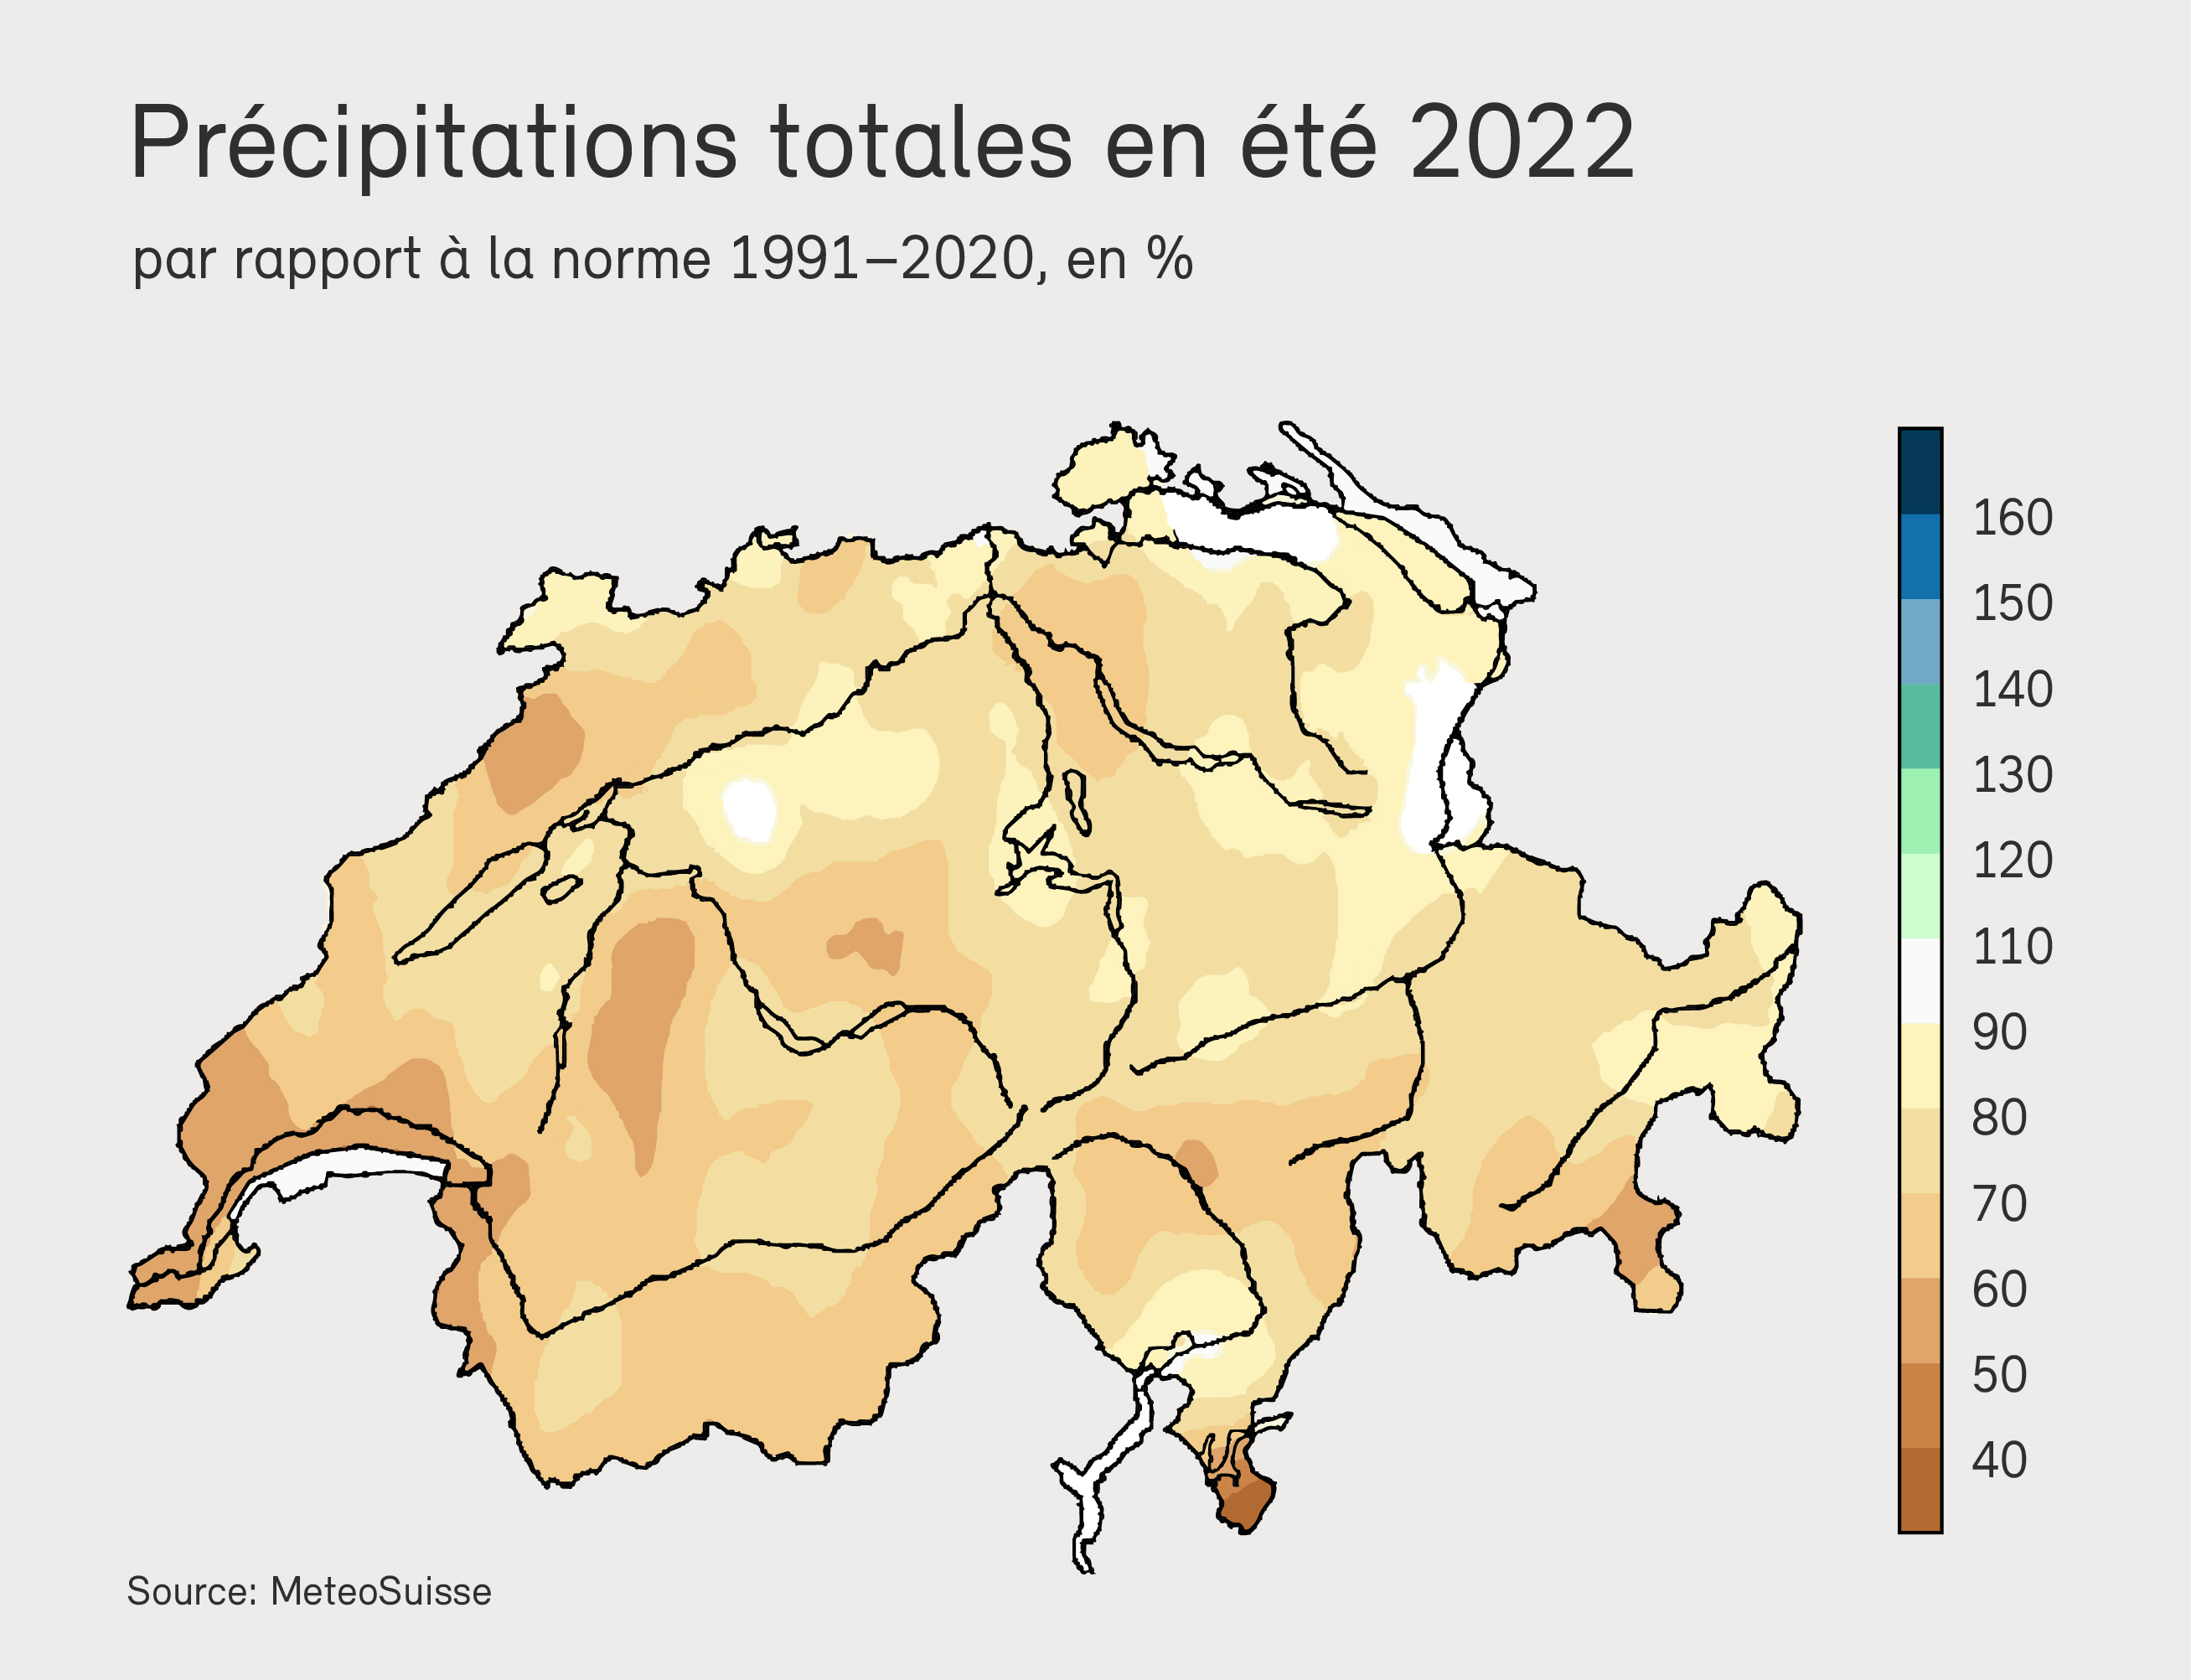 Prcipitations totales en été 2022